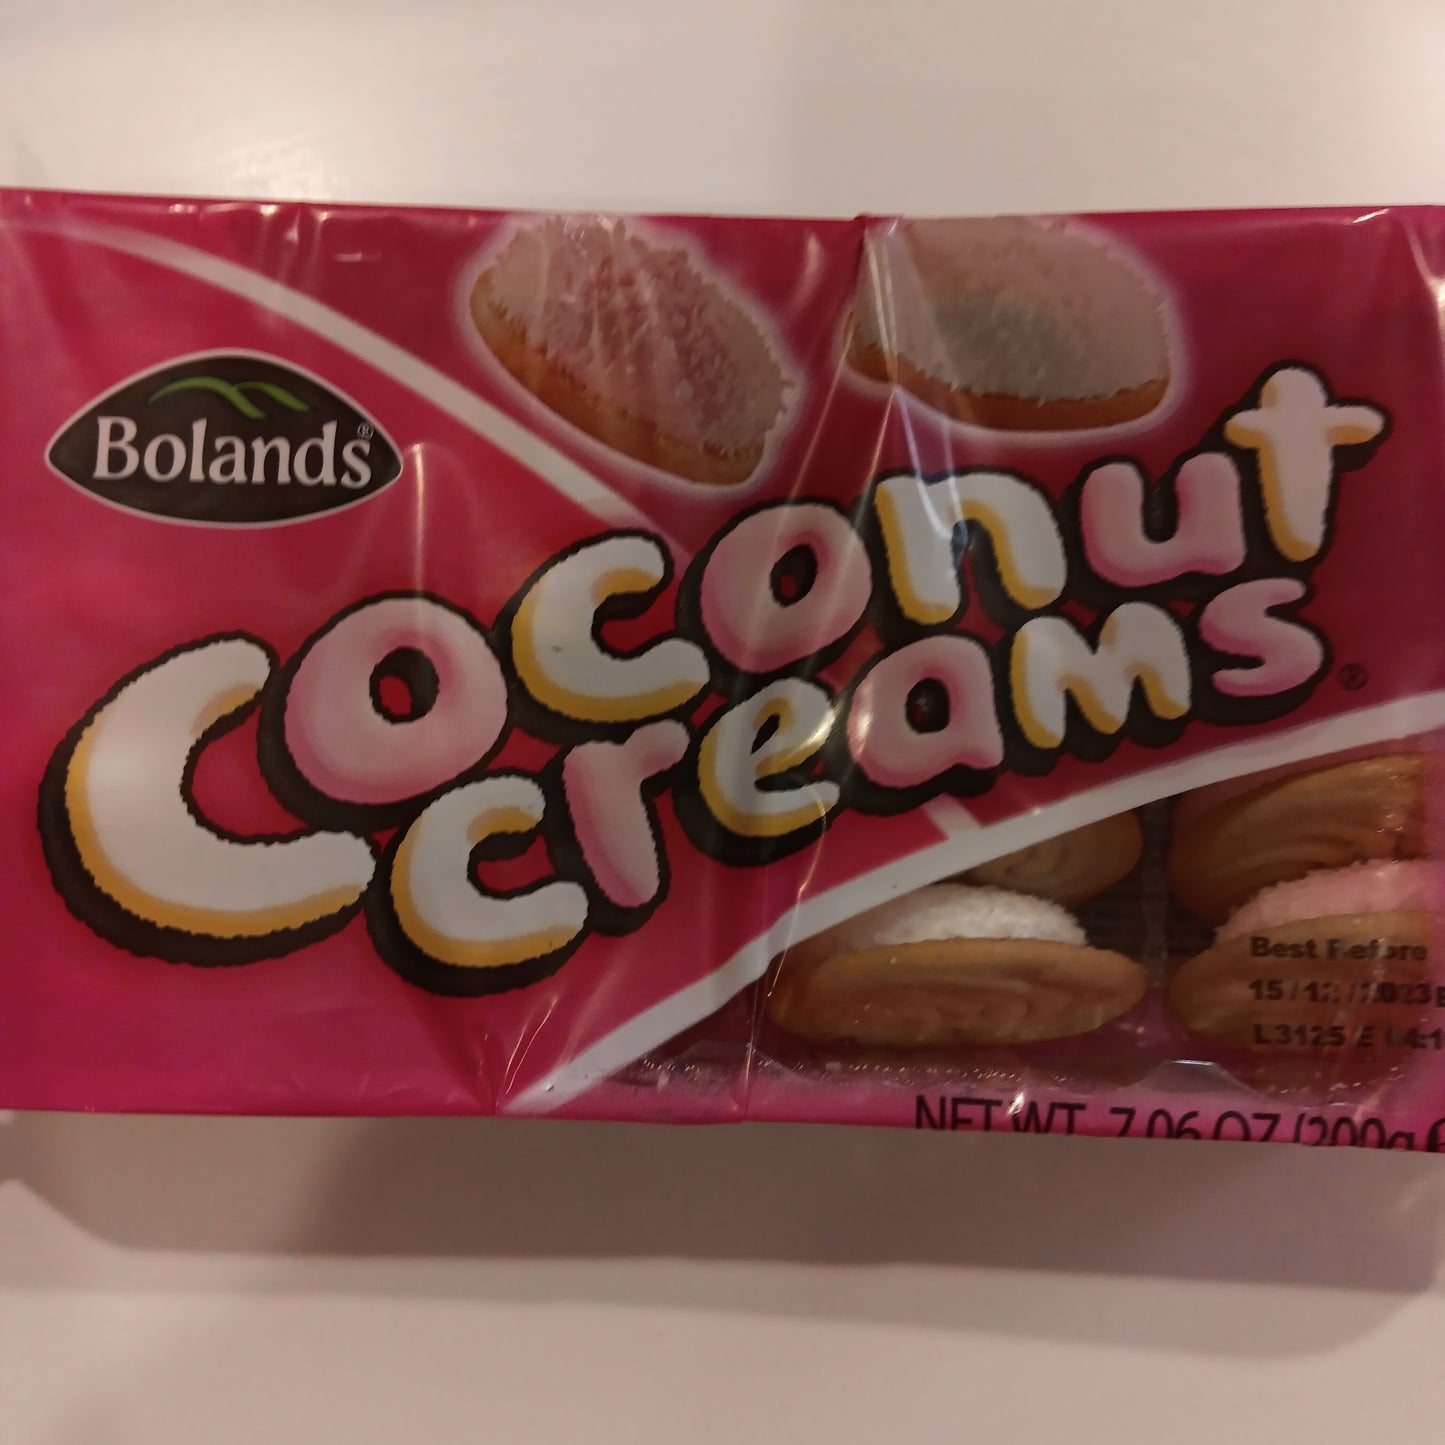 Bolands Coconut Creams (200g)